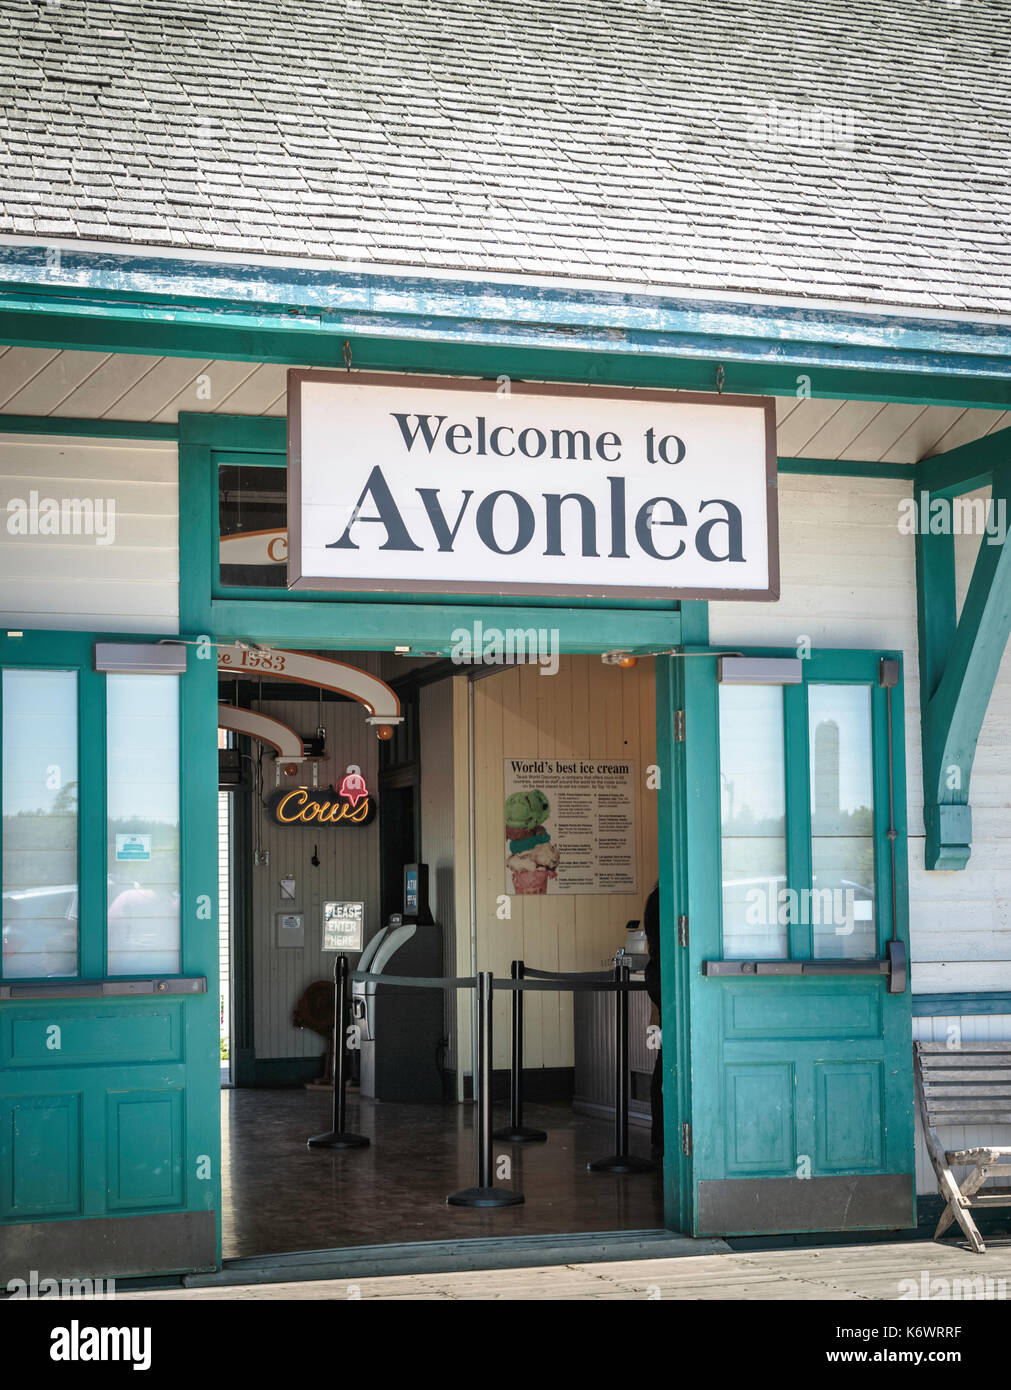 Bienvenue à avonlea signer à l'entrée du bâtiment à Avonlea, î. avonlea est reconnu comme le paramètre de L.M. Montgomery, Anne of Green Gables romans. Banque D'Images